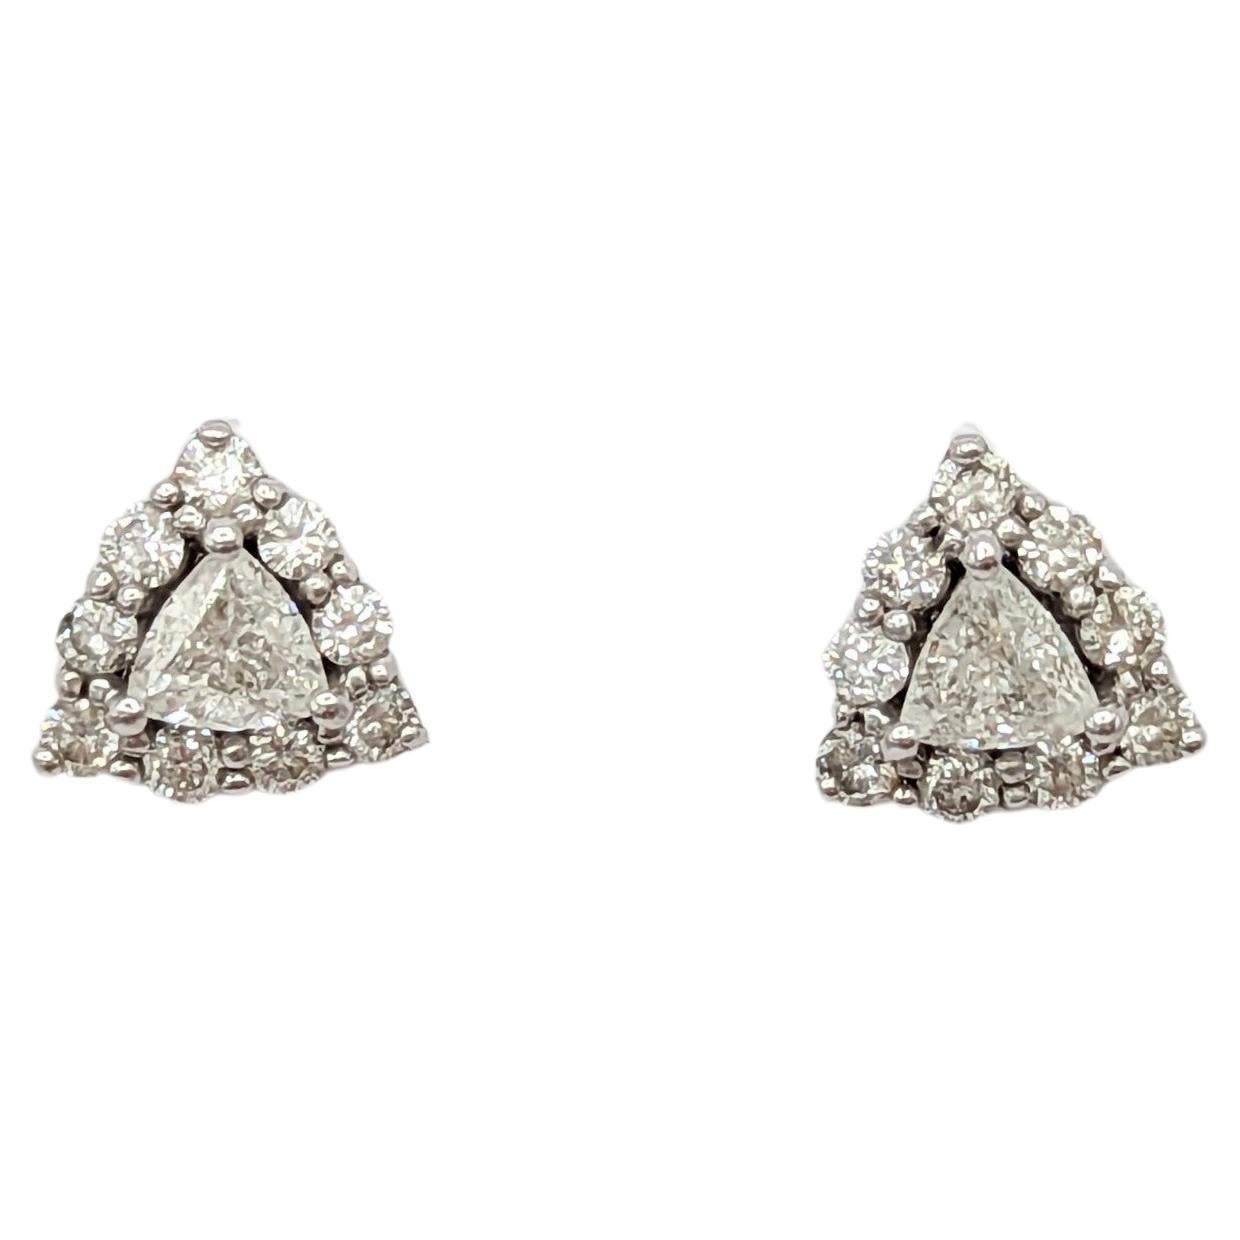 White Diamond Trillion Earring Studs in 14K White Gold For Sale